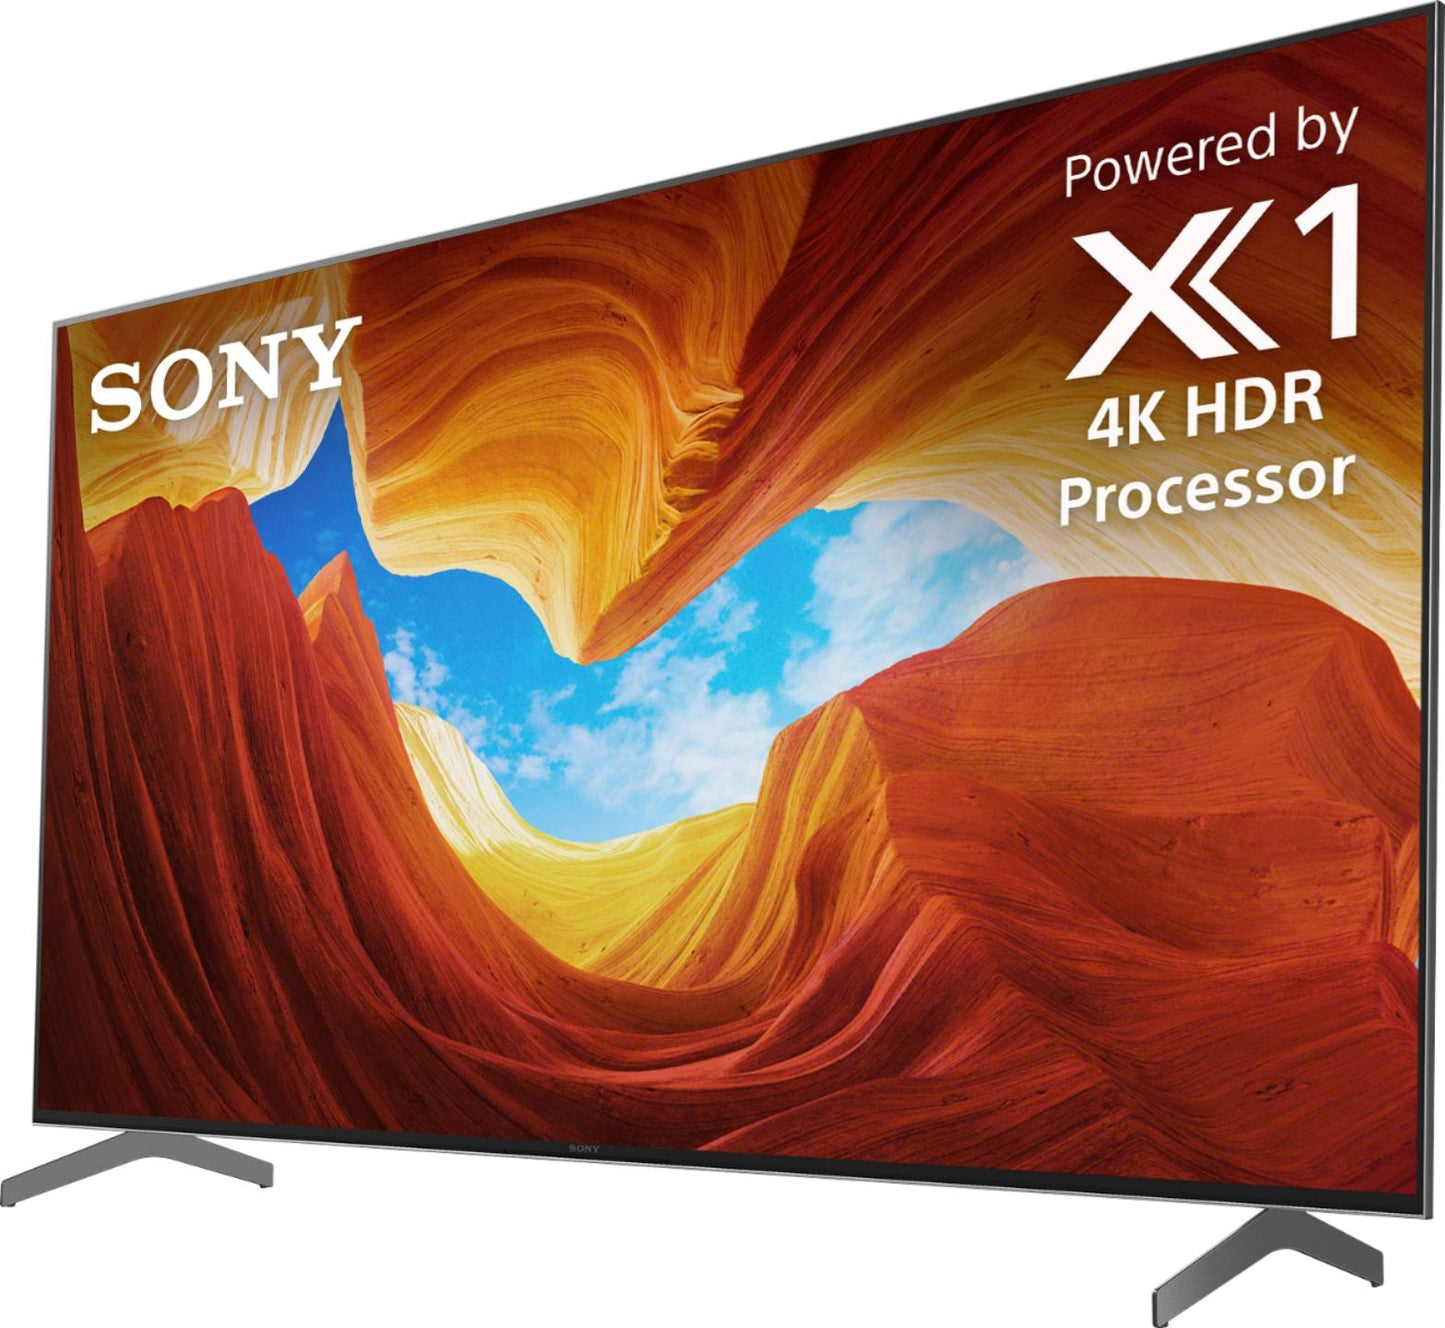 Sony X900H 85" Class HDR 4K UHD Smart LED TV XBR85X900H